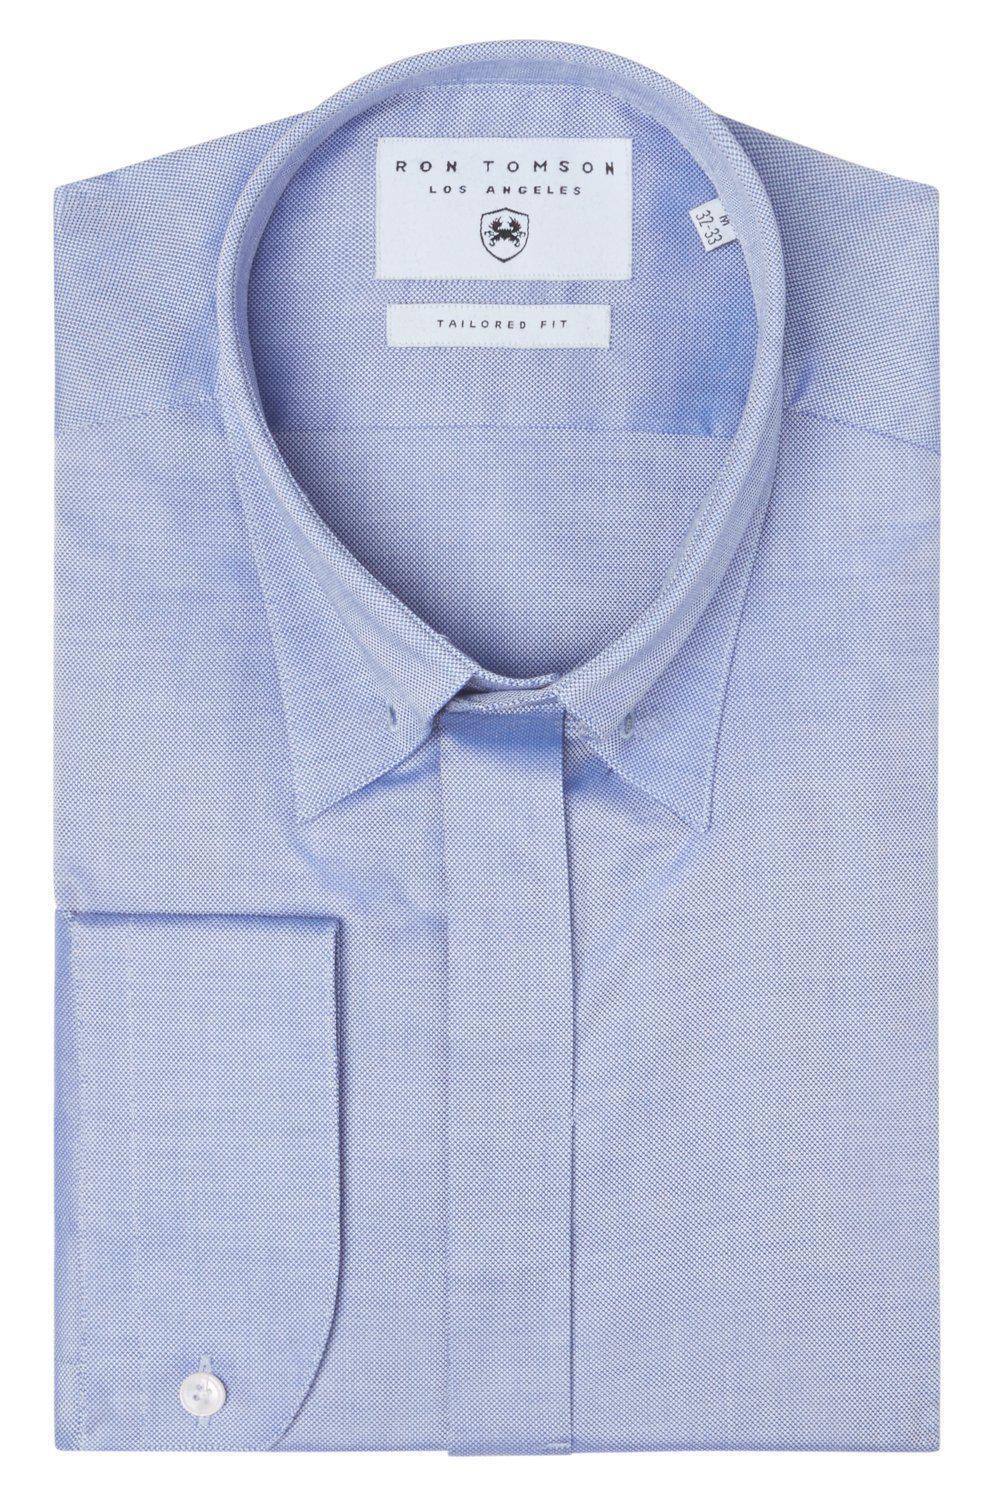 Tie-bar Hidden Placket Shirt- Blue - Ron Tomson